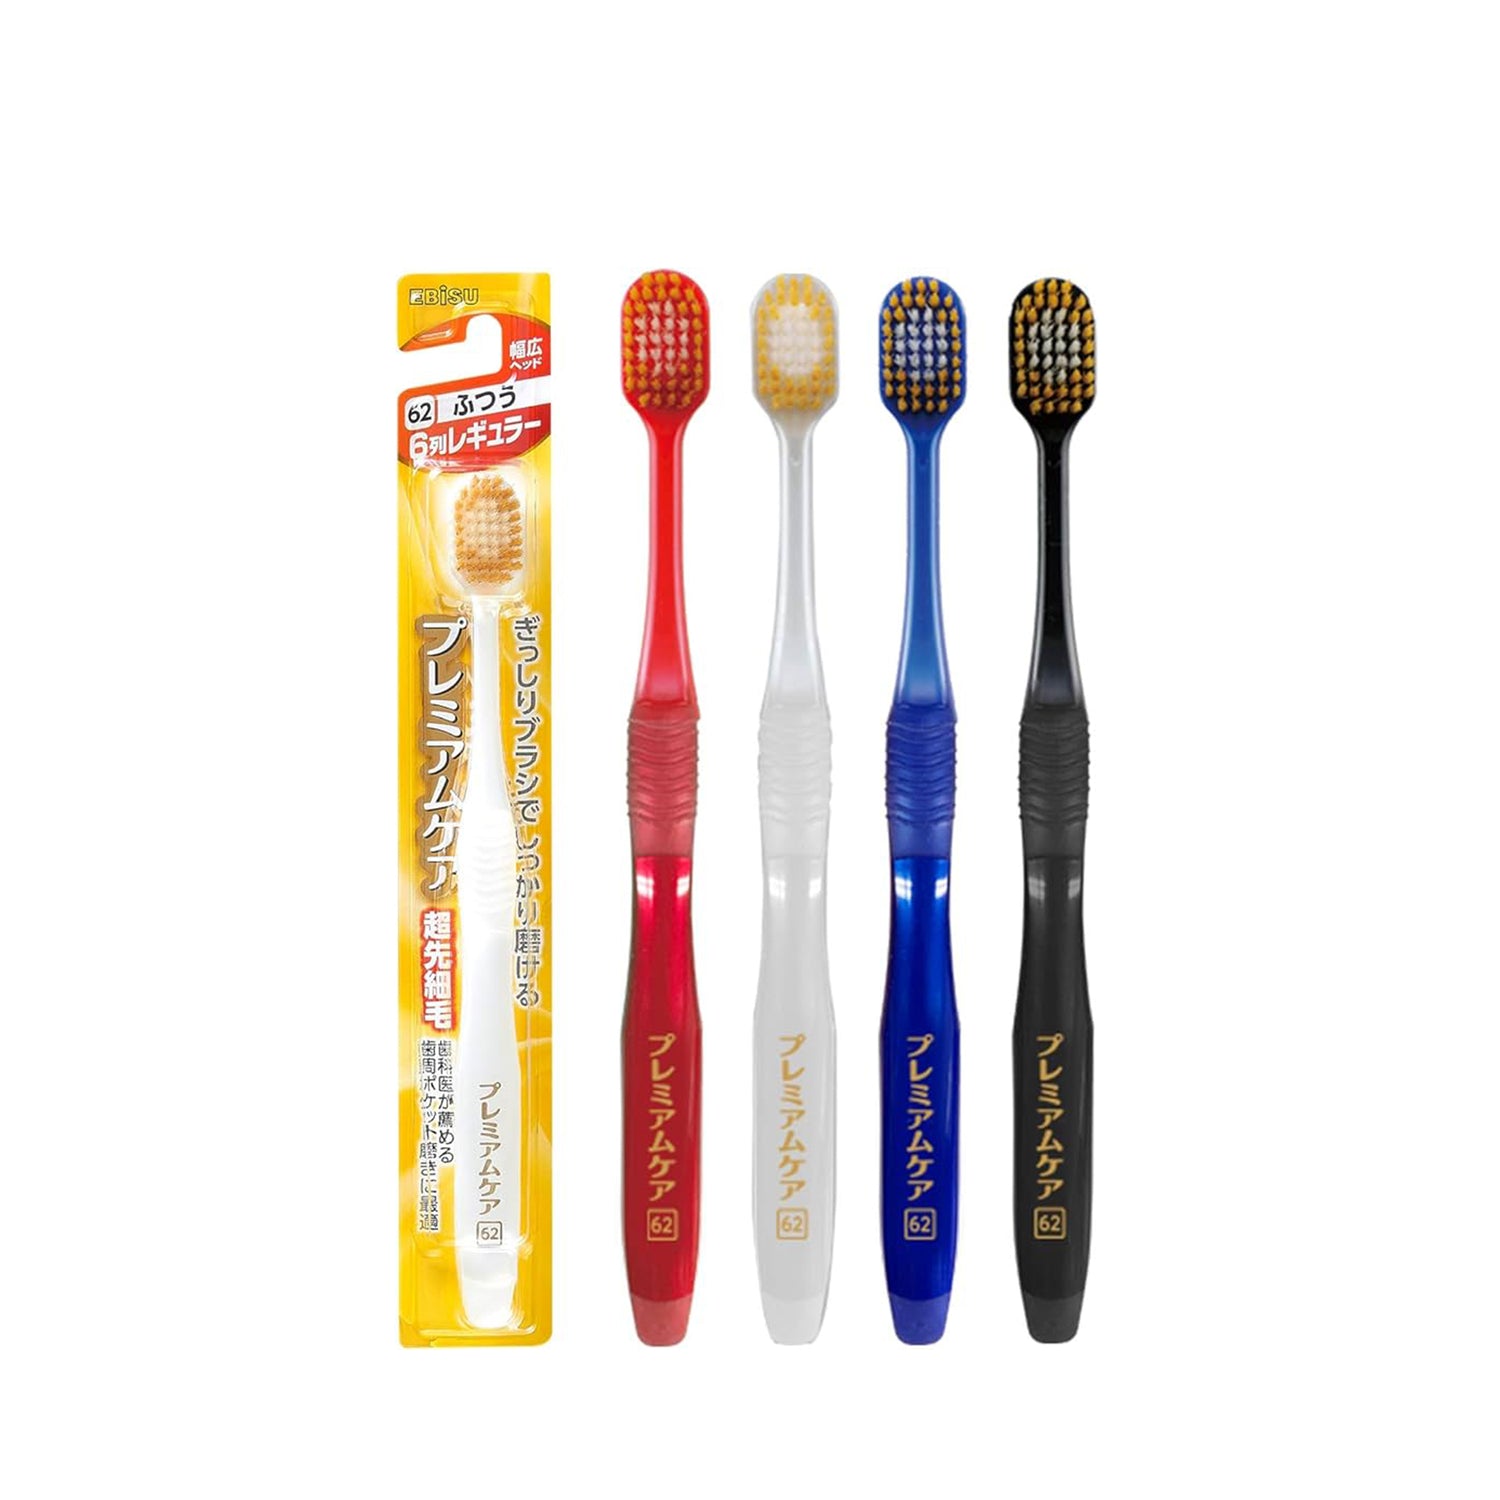 EBiSU Premium Care 6-Row Toothbrush